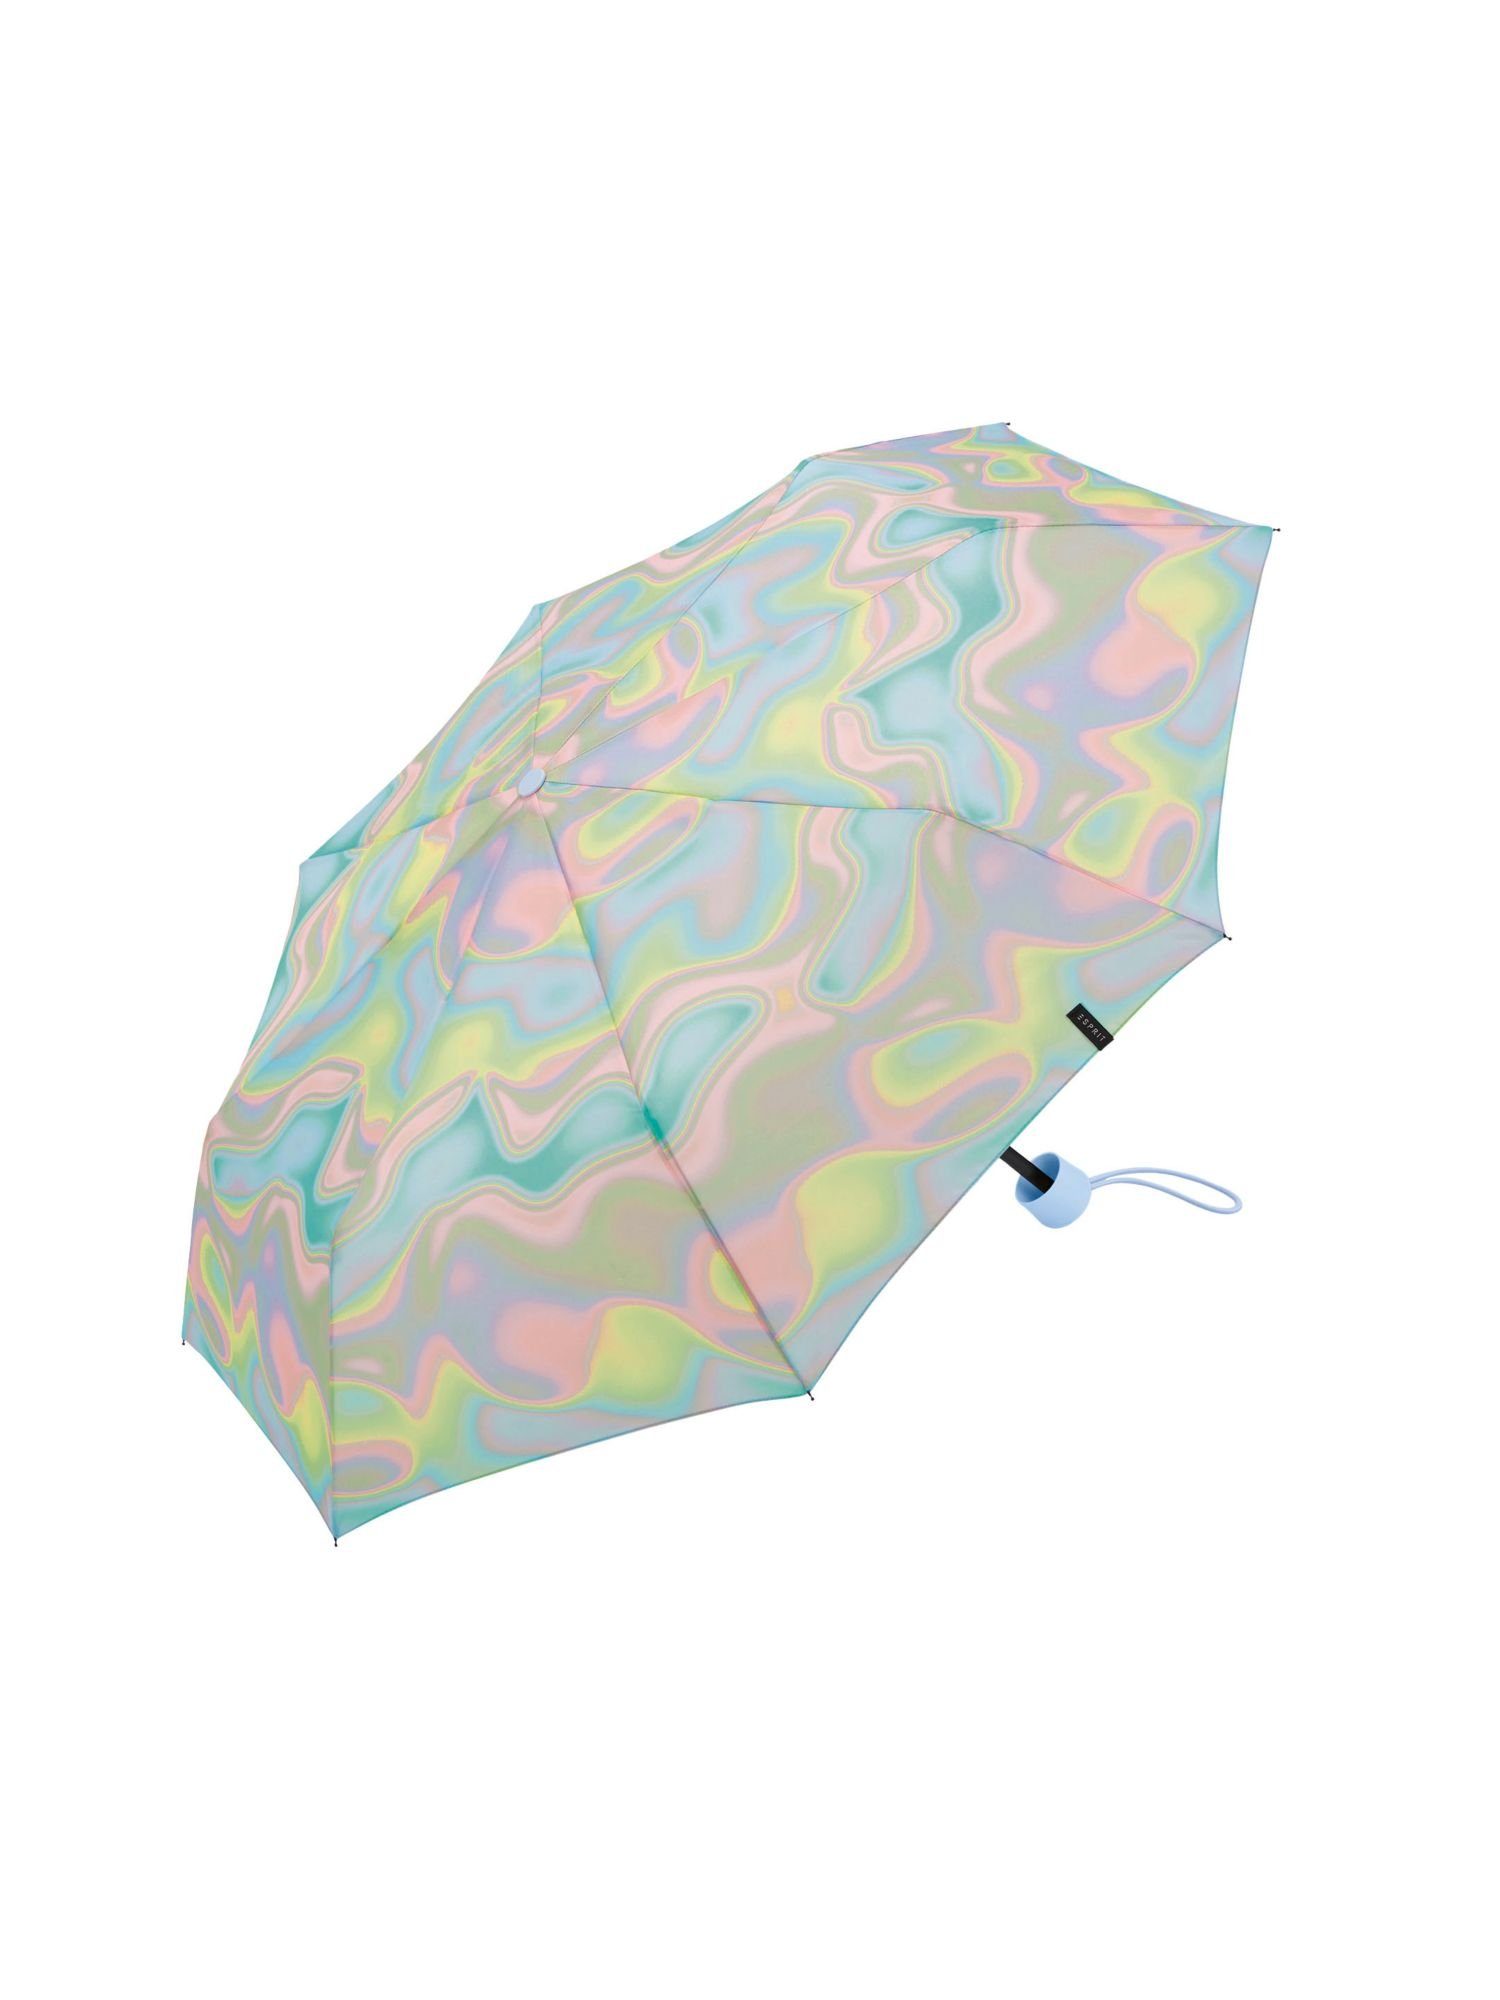 Pocket umbrella Esprit Taschenregenschirm